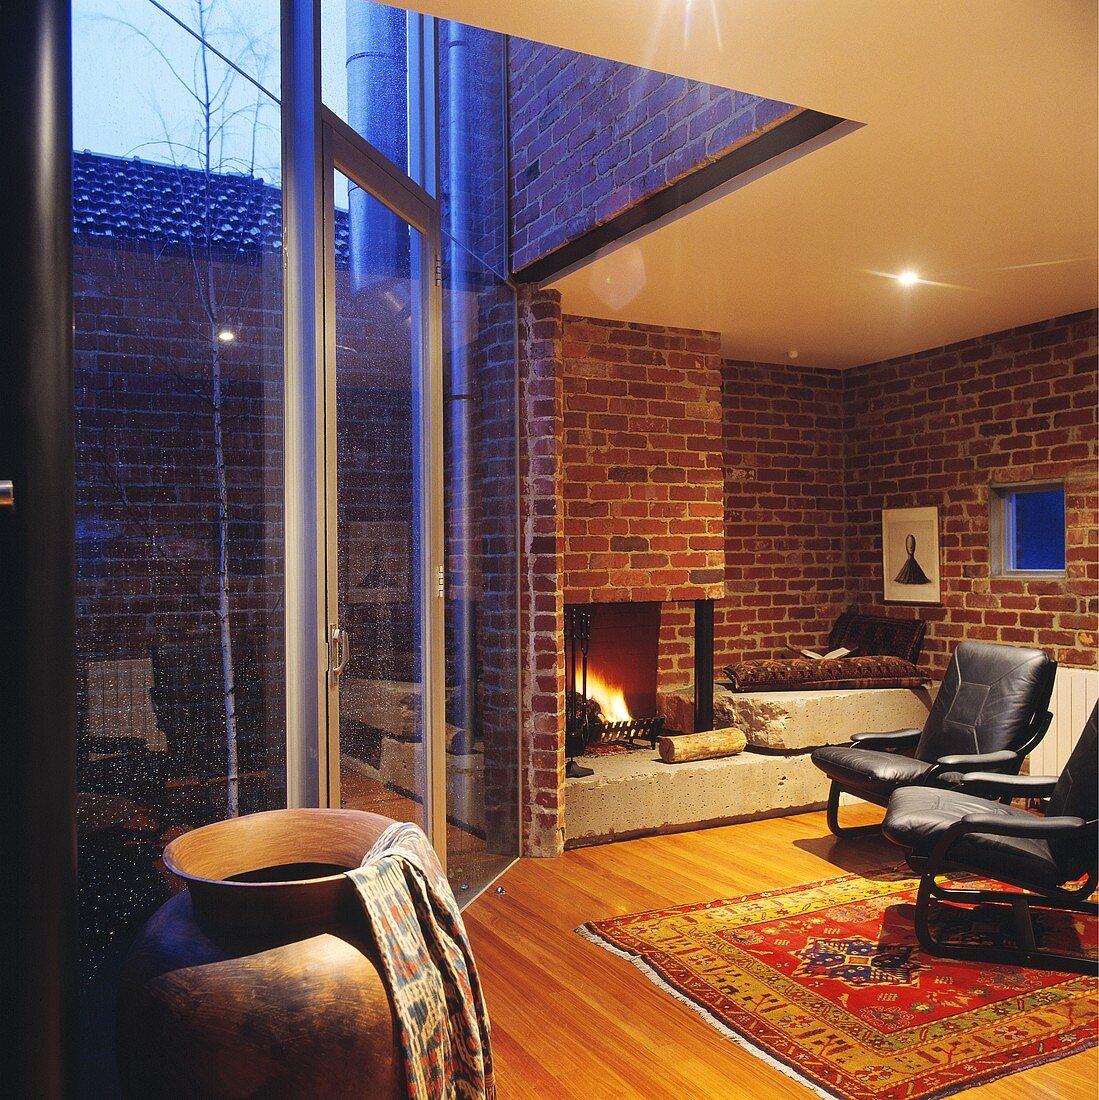 Ein modernes Wohnzimmer mit einer offenen Feuerstelle und einer großen Fensterfront